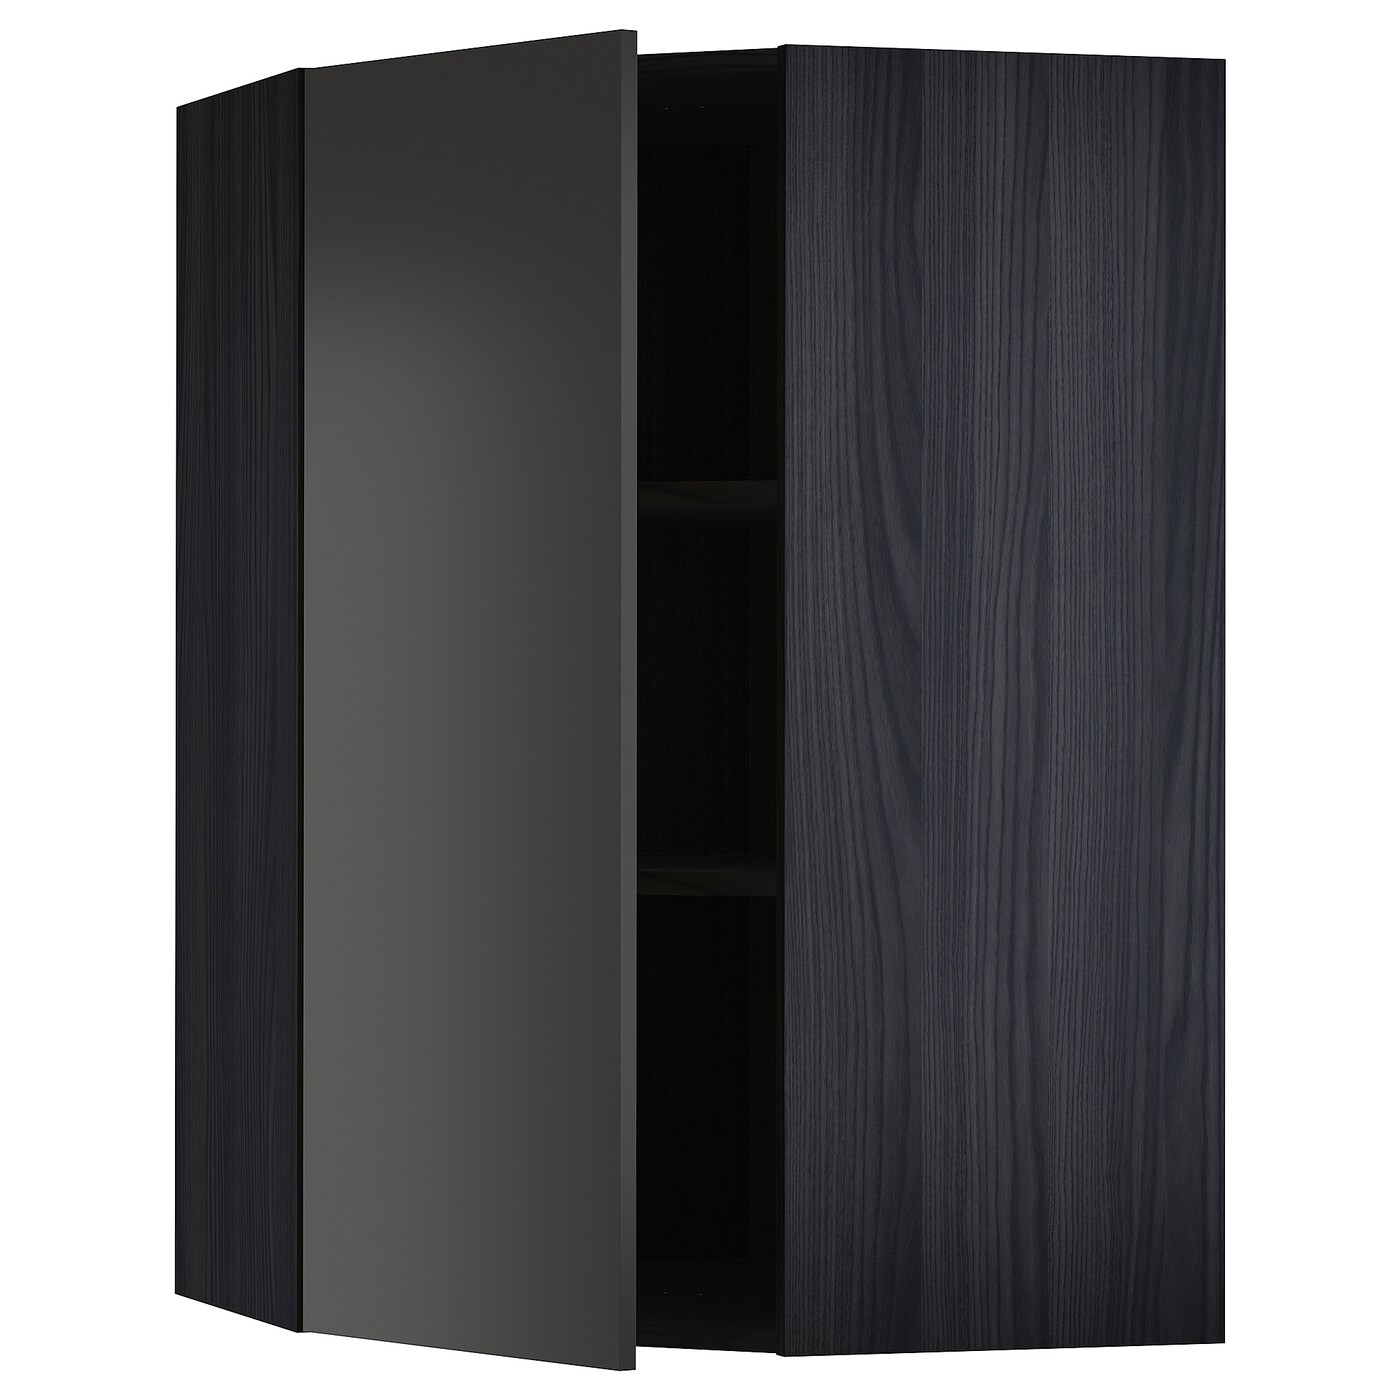 Угловой навесной шкаф с полками - METOD  IKEA/  МЕТОД ИКЕА, 100х68 см, черный